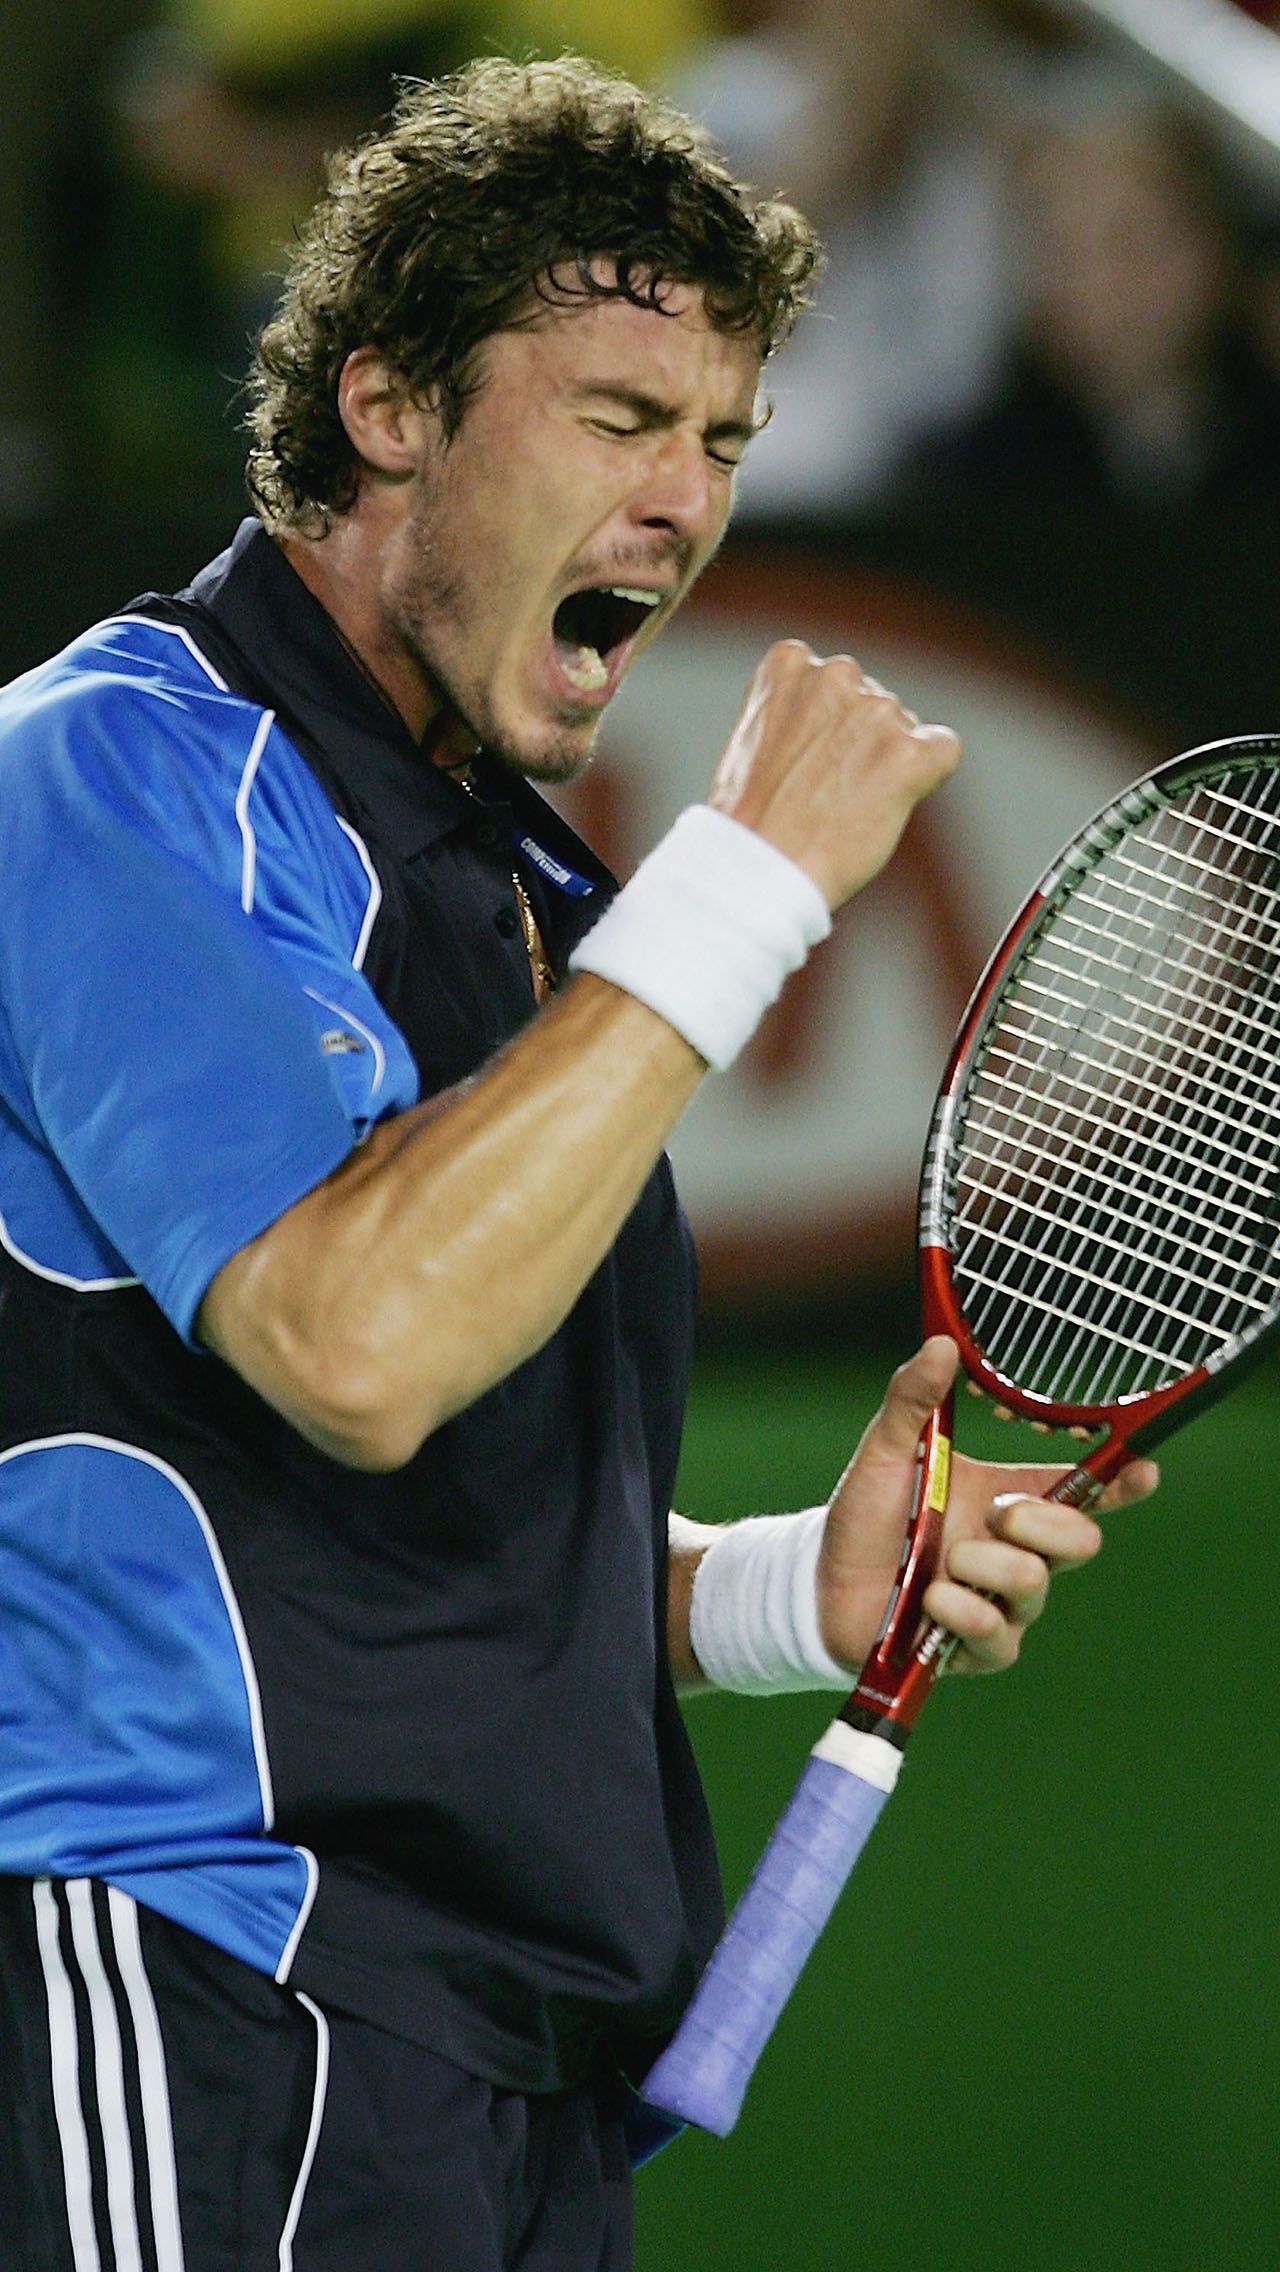 Марат Сафин о победе на Australian Open – 2005: «Ощутил огромное облегчение, когда выиграл свой 2-й «Шлем». Думал, что так и останусь парнем, который по ошибке взял ТБШ и больше ничего не достиг».